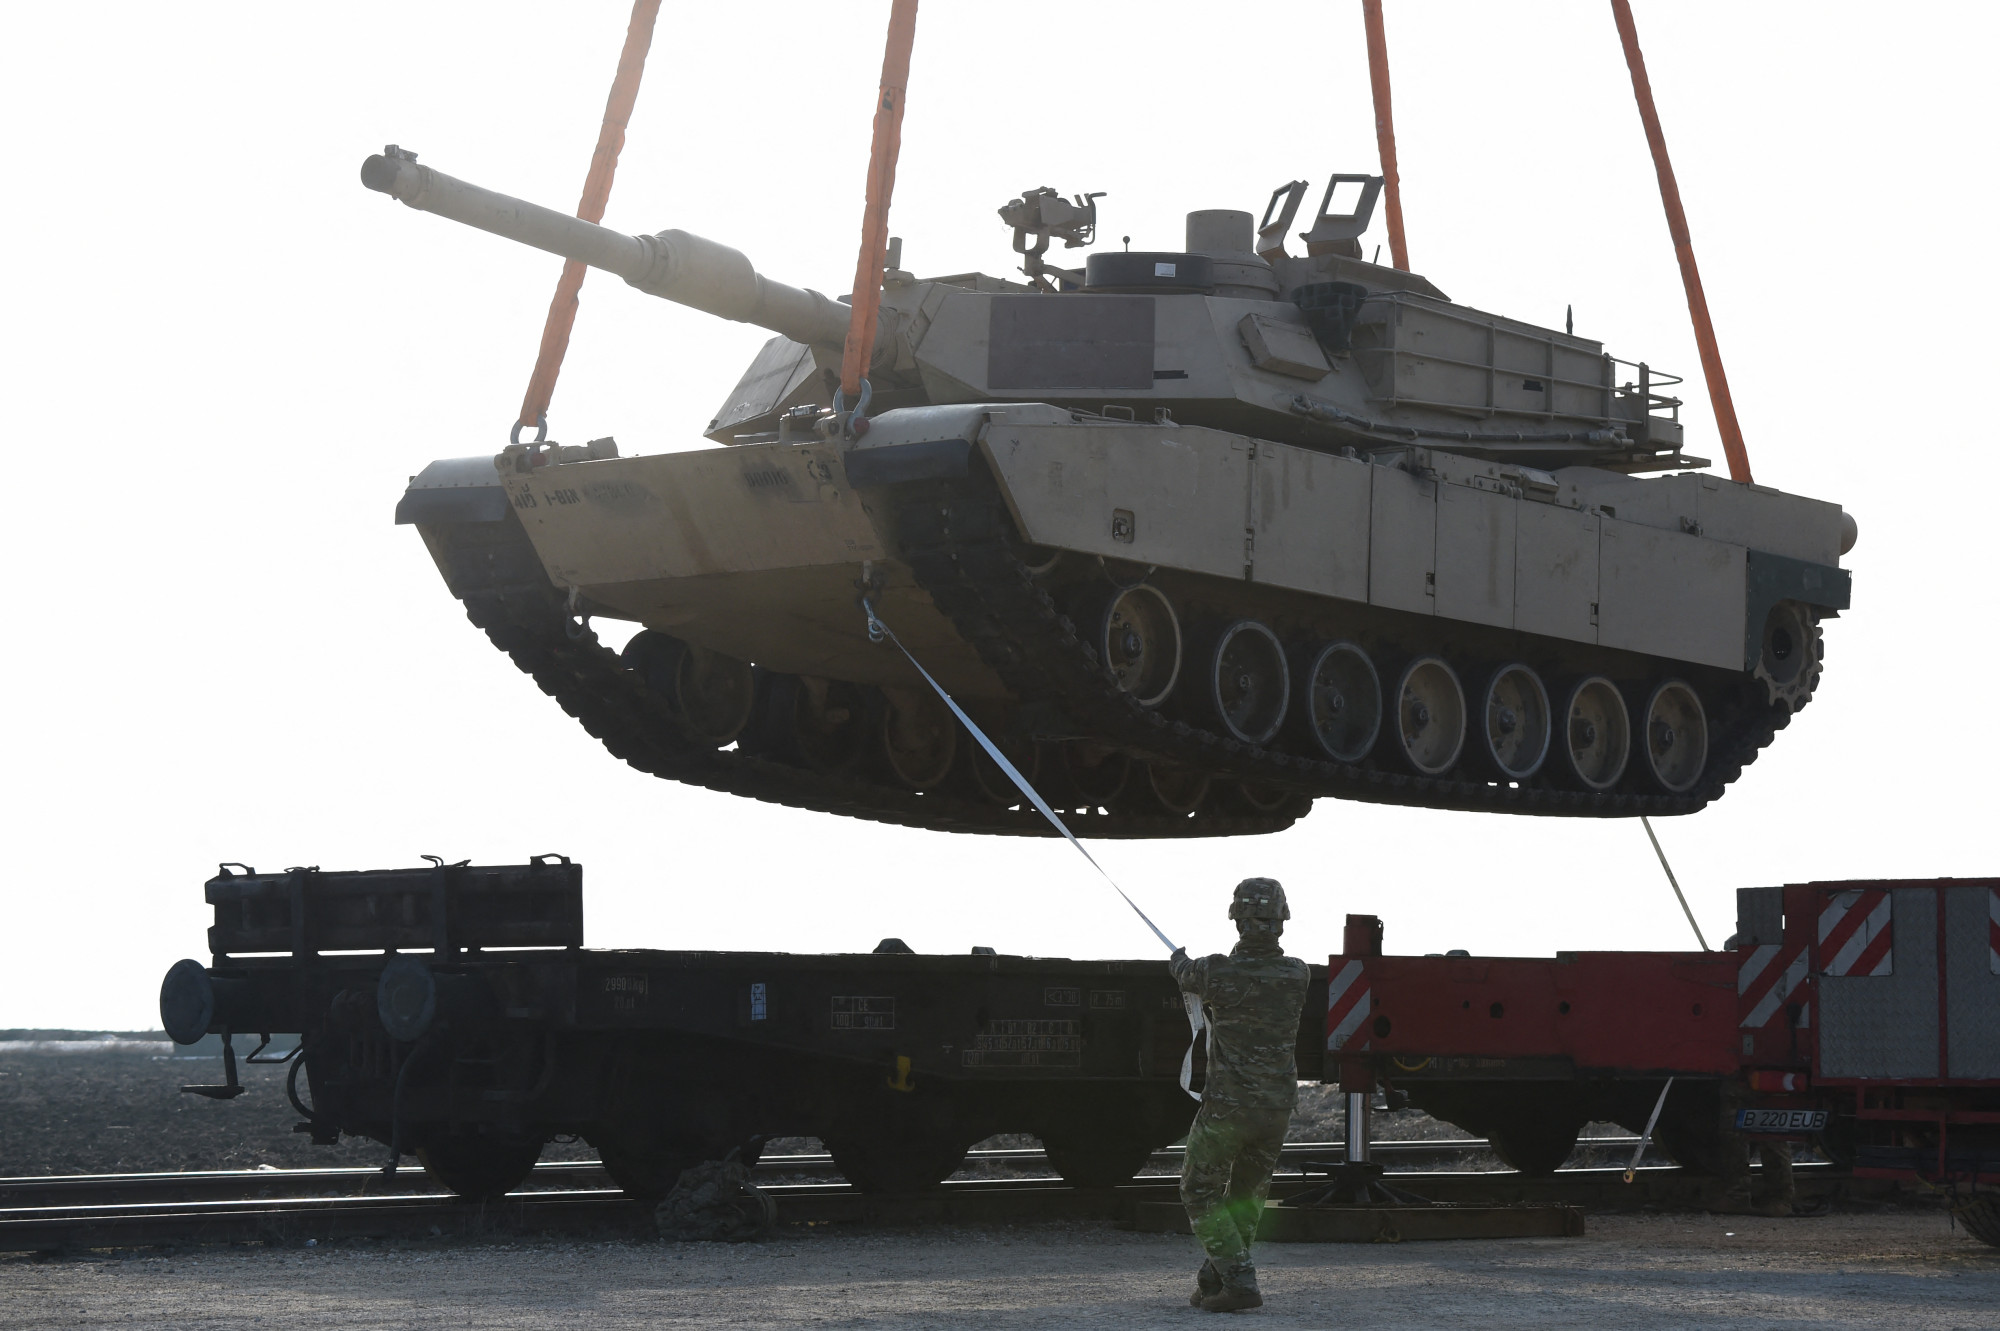 Akár még egy évig is eltarthat, amíg az USA le tudja szállítani az Ukrajnának ígért Abrams tankokat